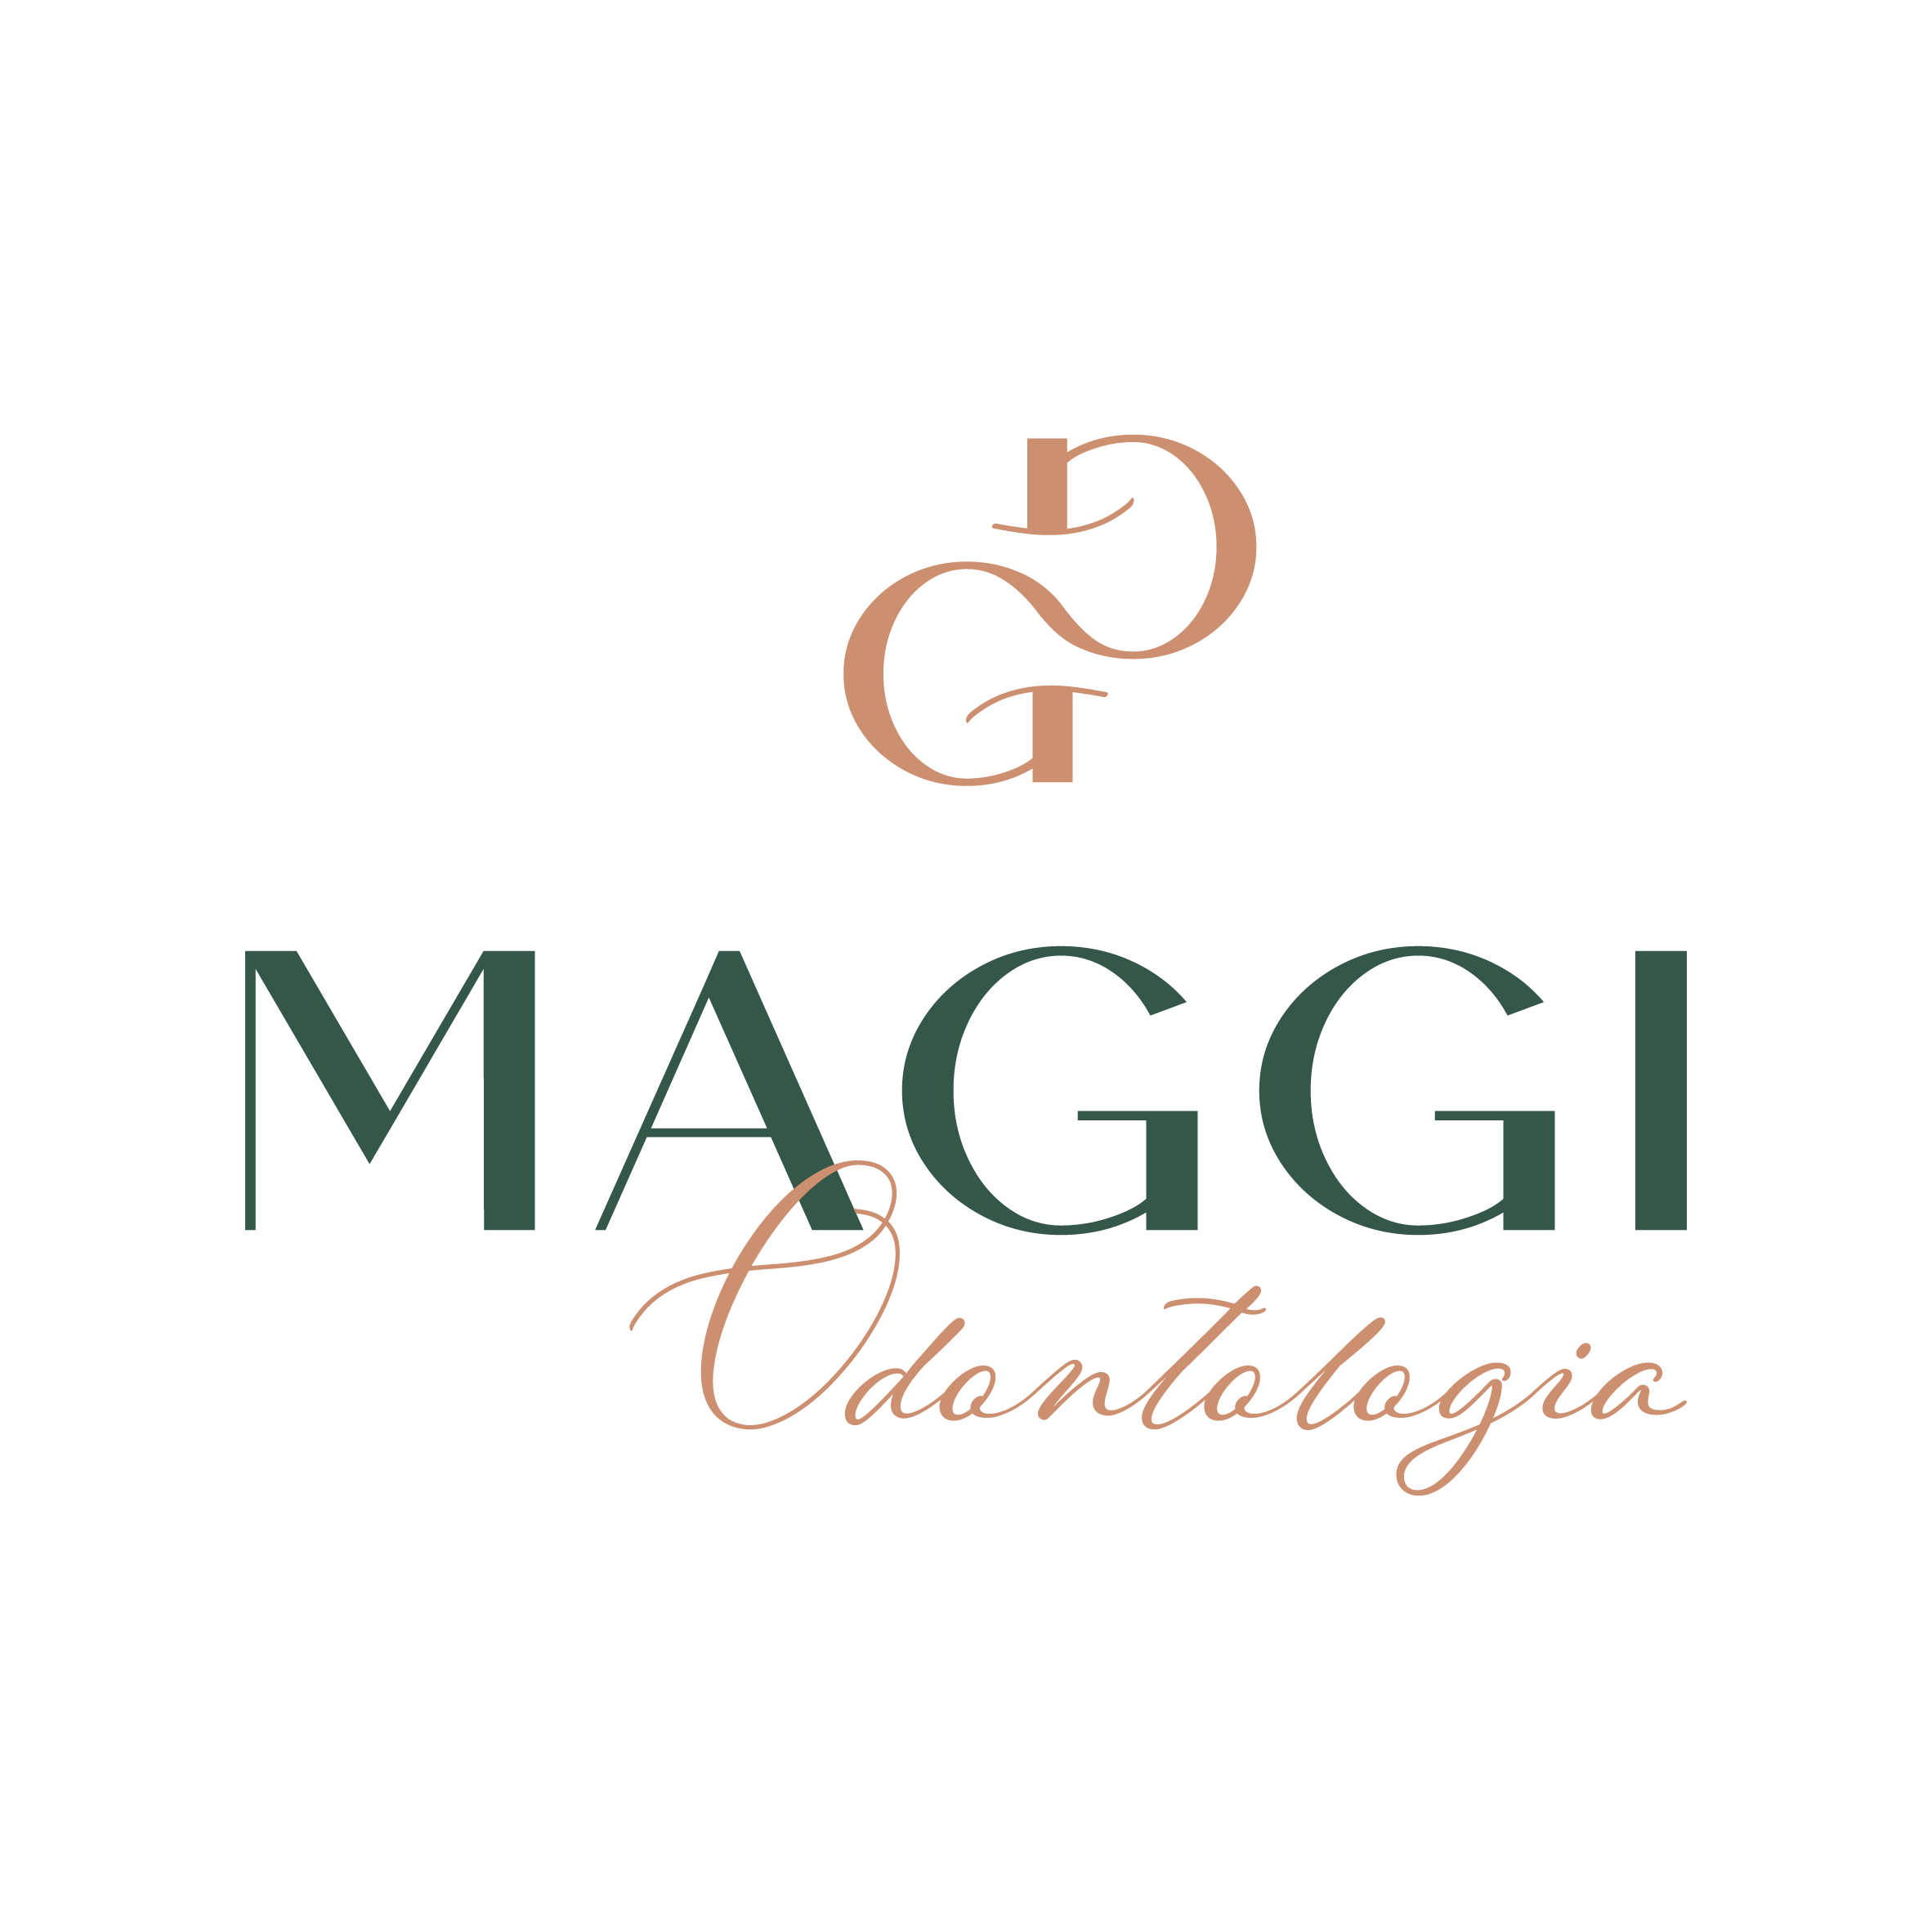 Maggi Odontologia_Logotipo Padrão-02